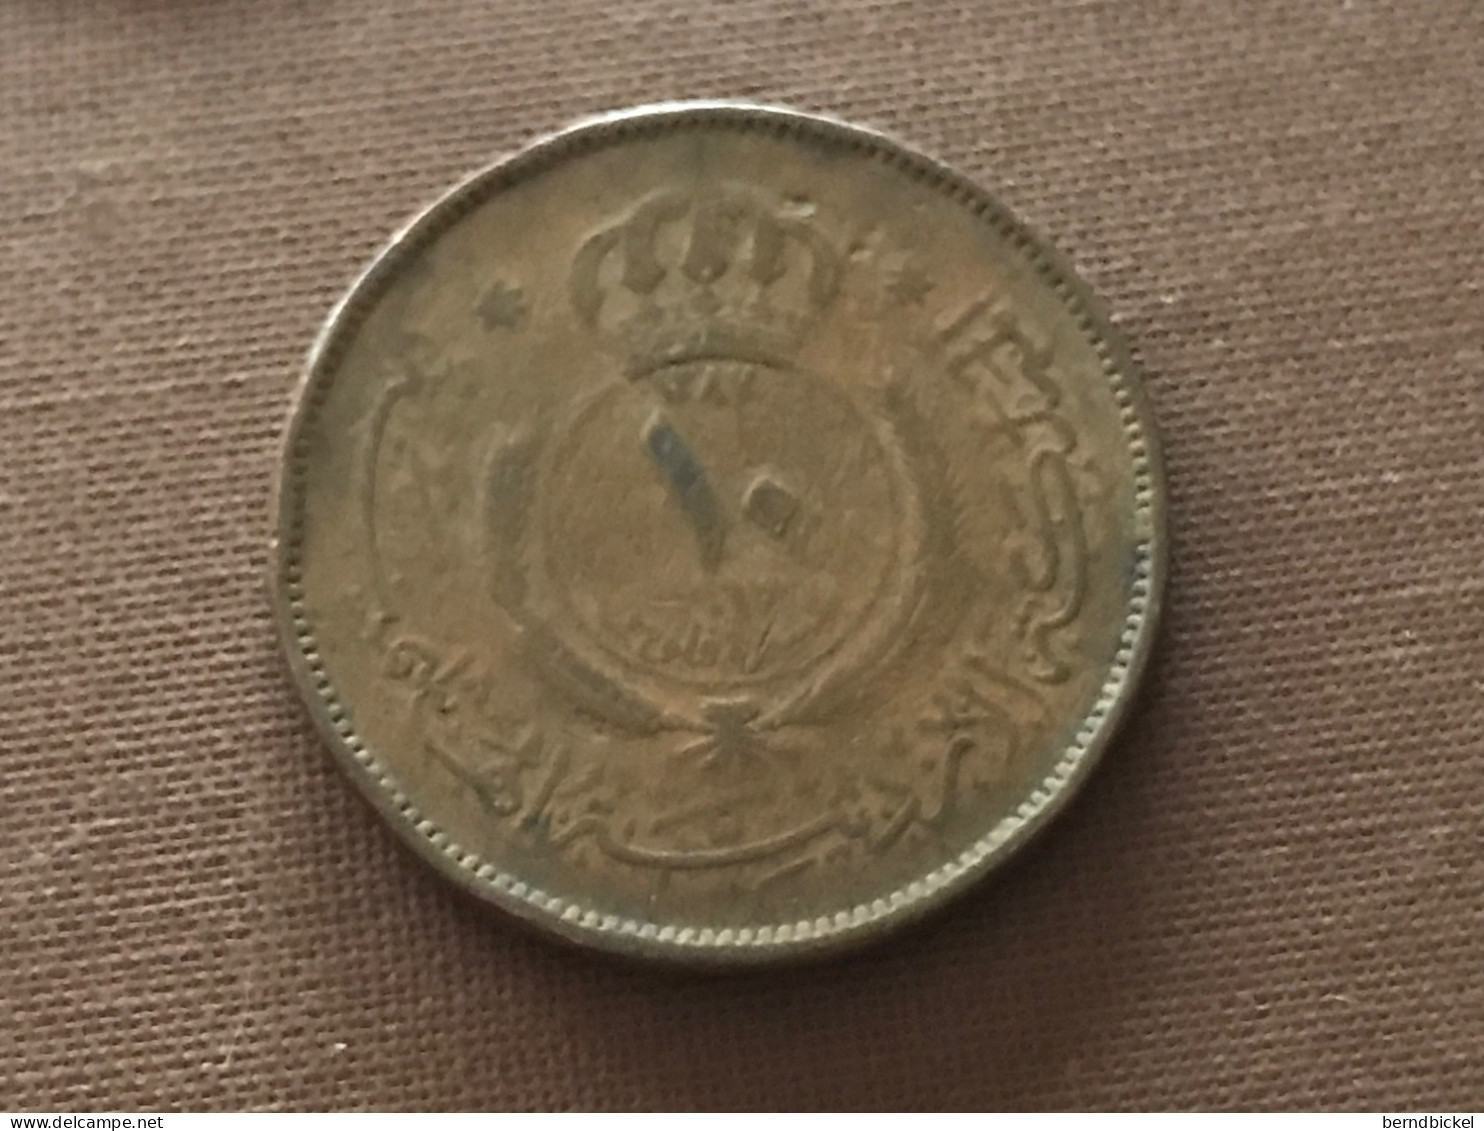 Münze Münzen Umlaufmünze Jordanien 10 Fils 1967 - Jordanië